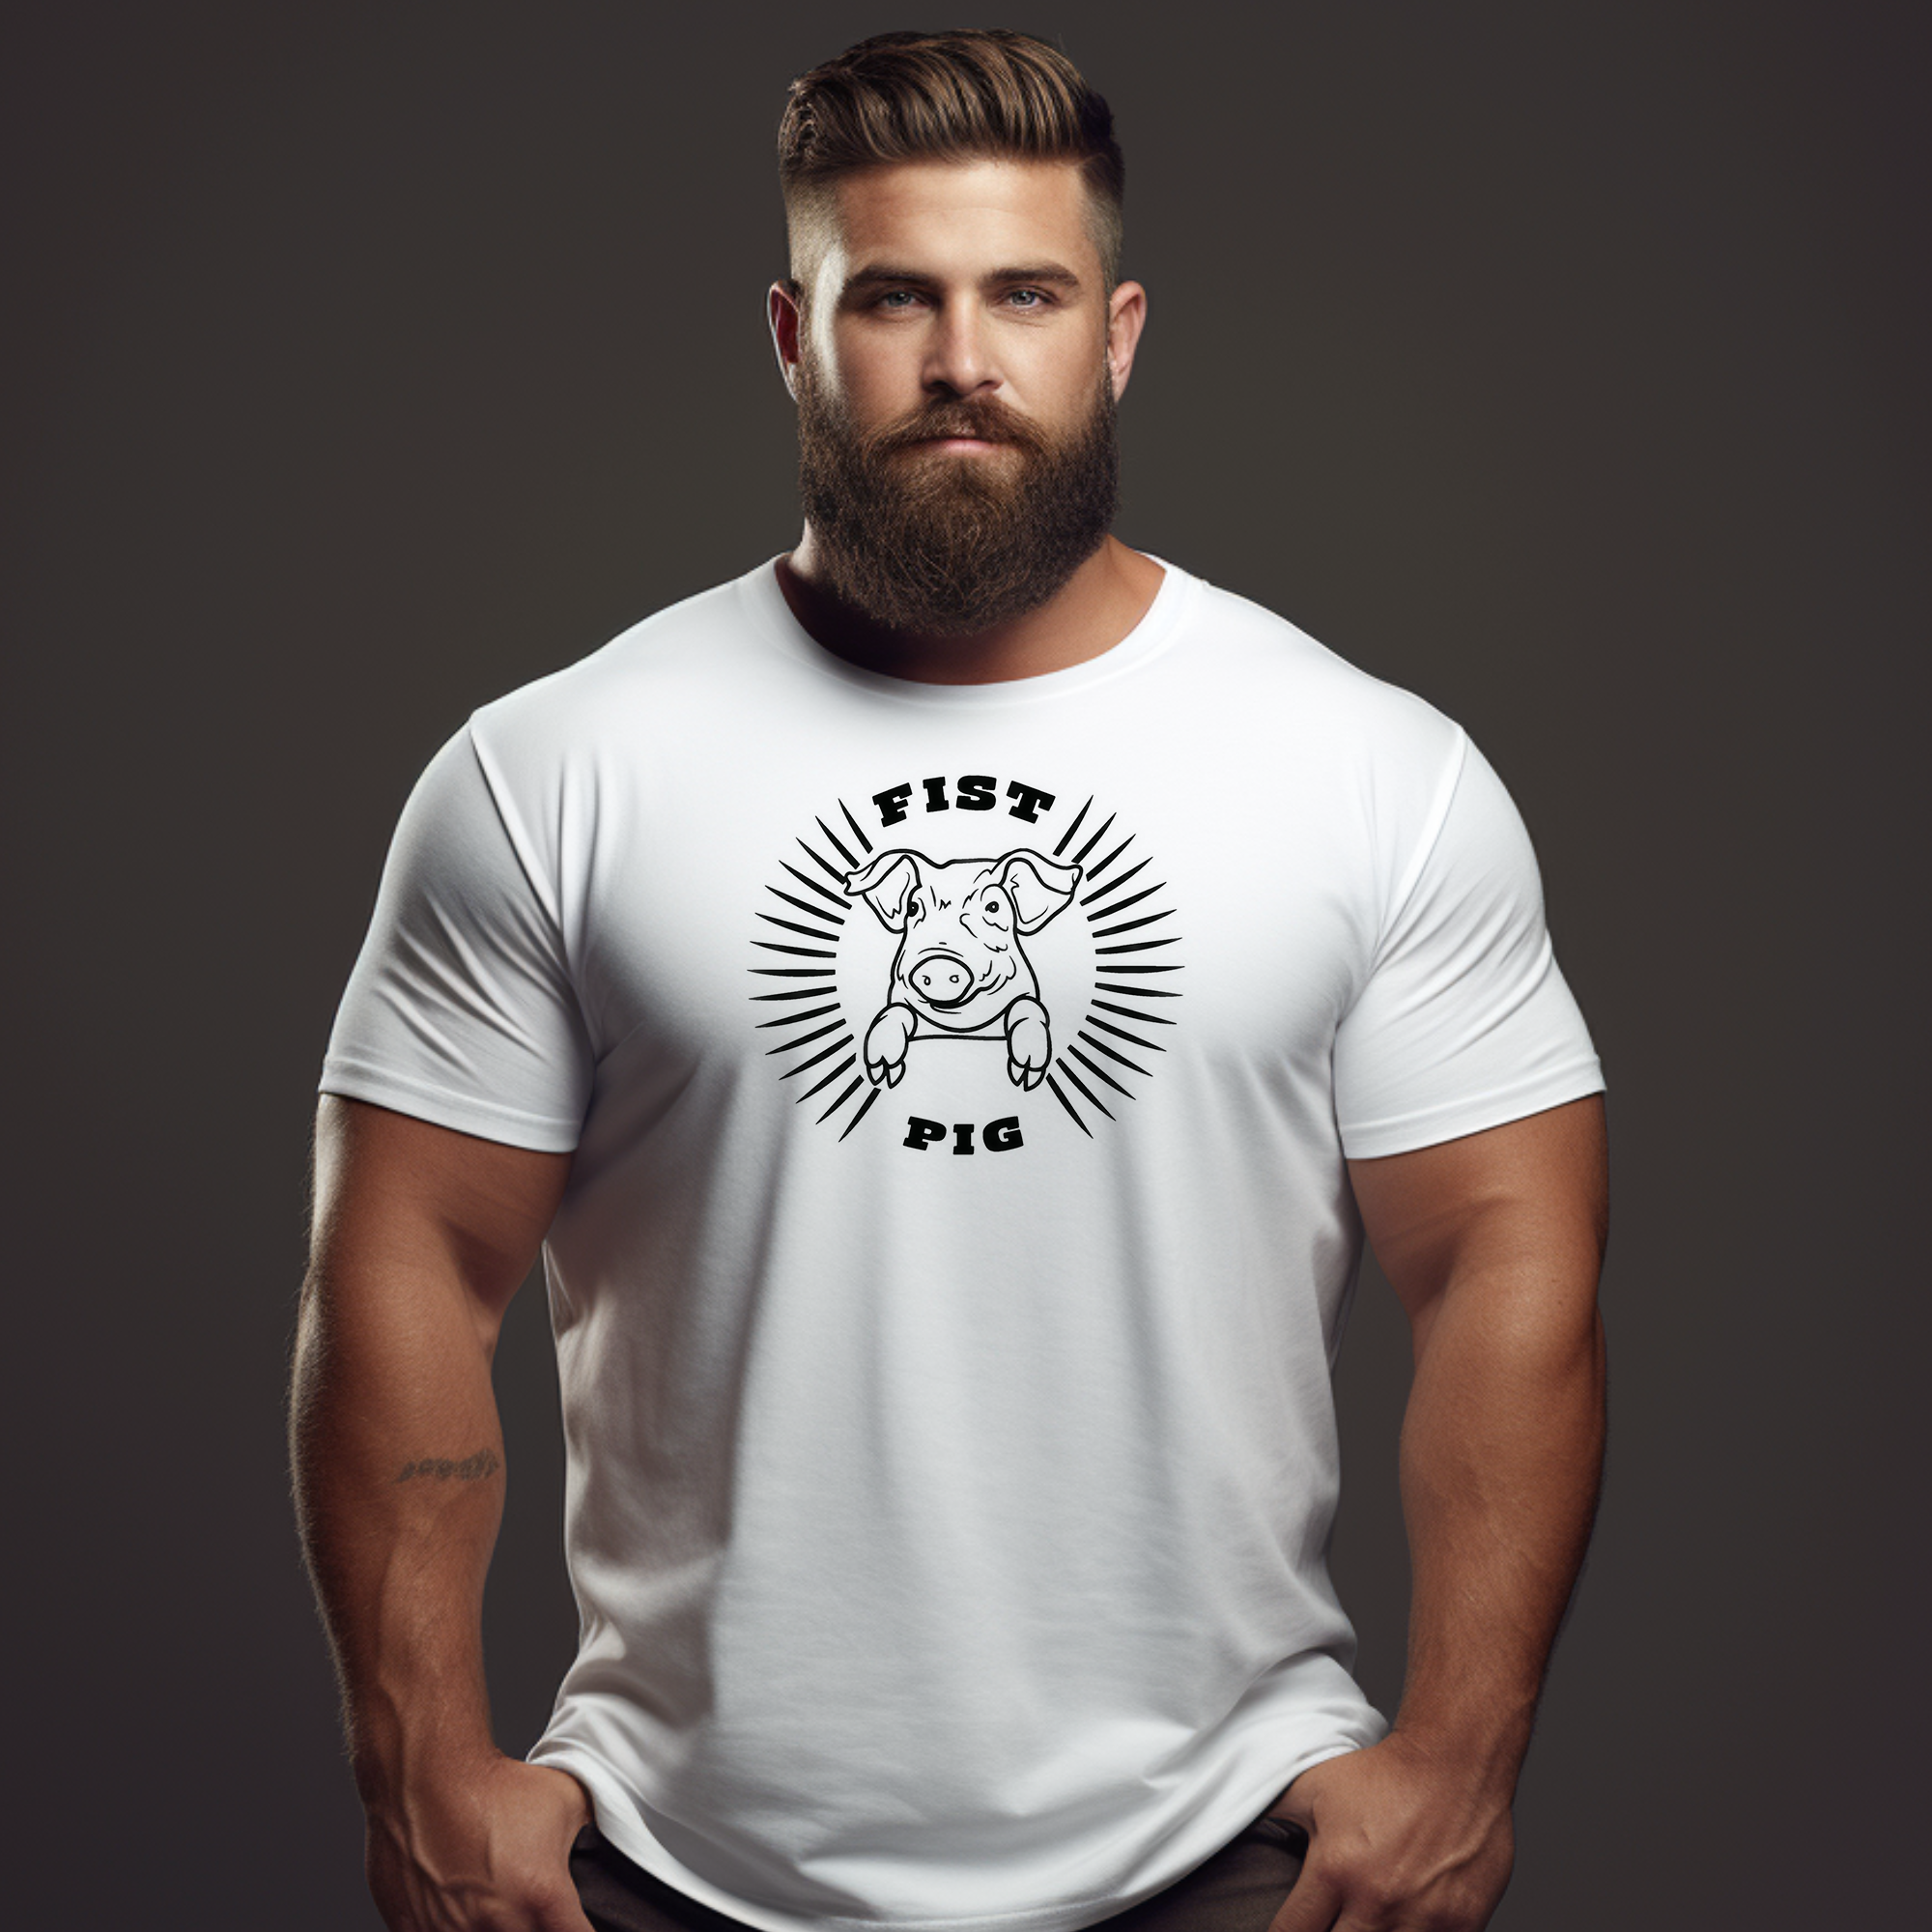 Tits T-shirt - Double Fistin Mens T-shirt